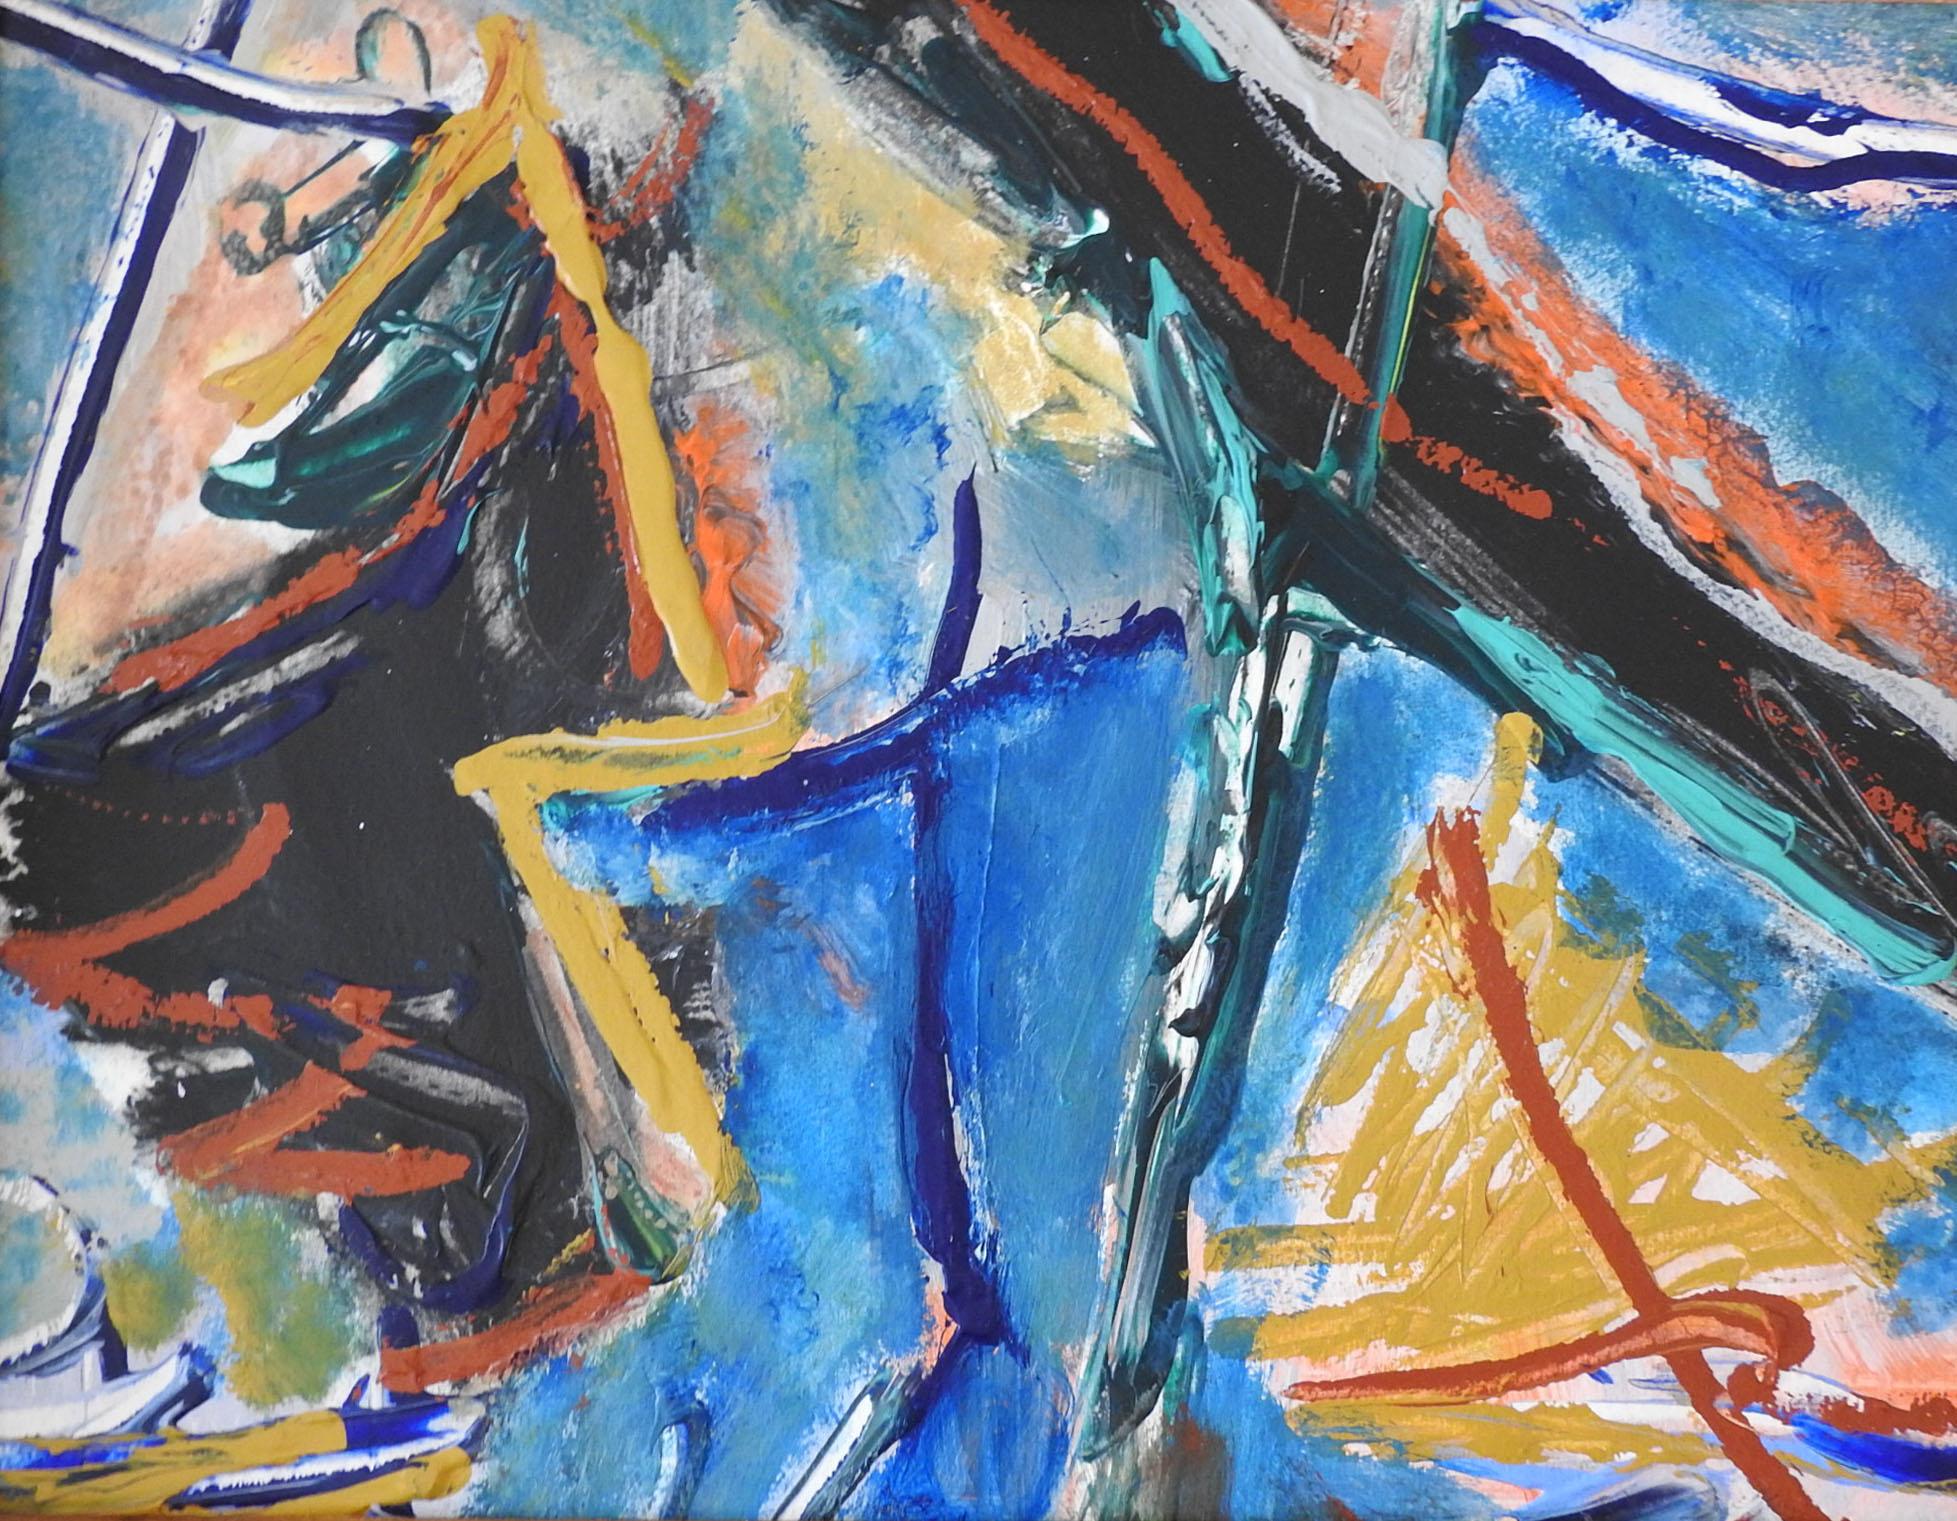 Peinture expressionniste abstraite à l'acrylique sur papier de la fin du 20e siècle en bleu, ocre, noir et rouge. Non signée. Présenté dans un cadre en bois d'époque moderne du milieu du siècle, éraflures sur le cadre.